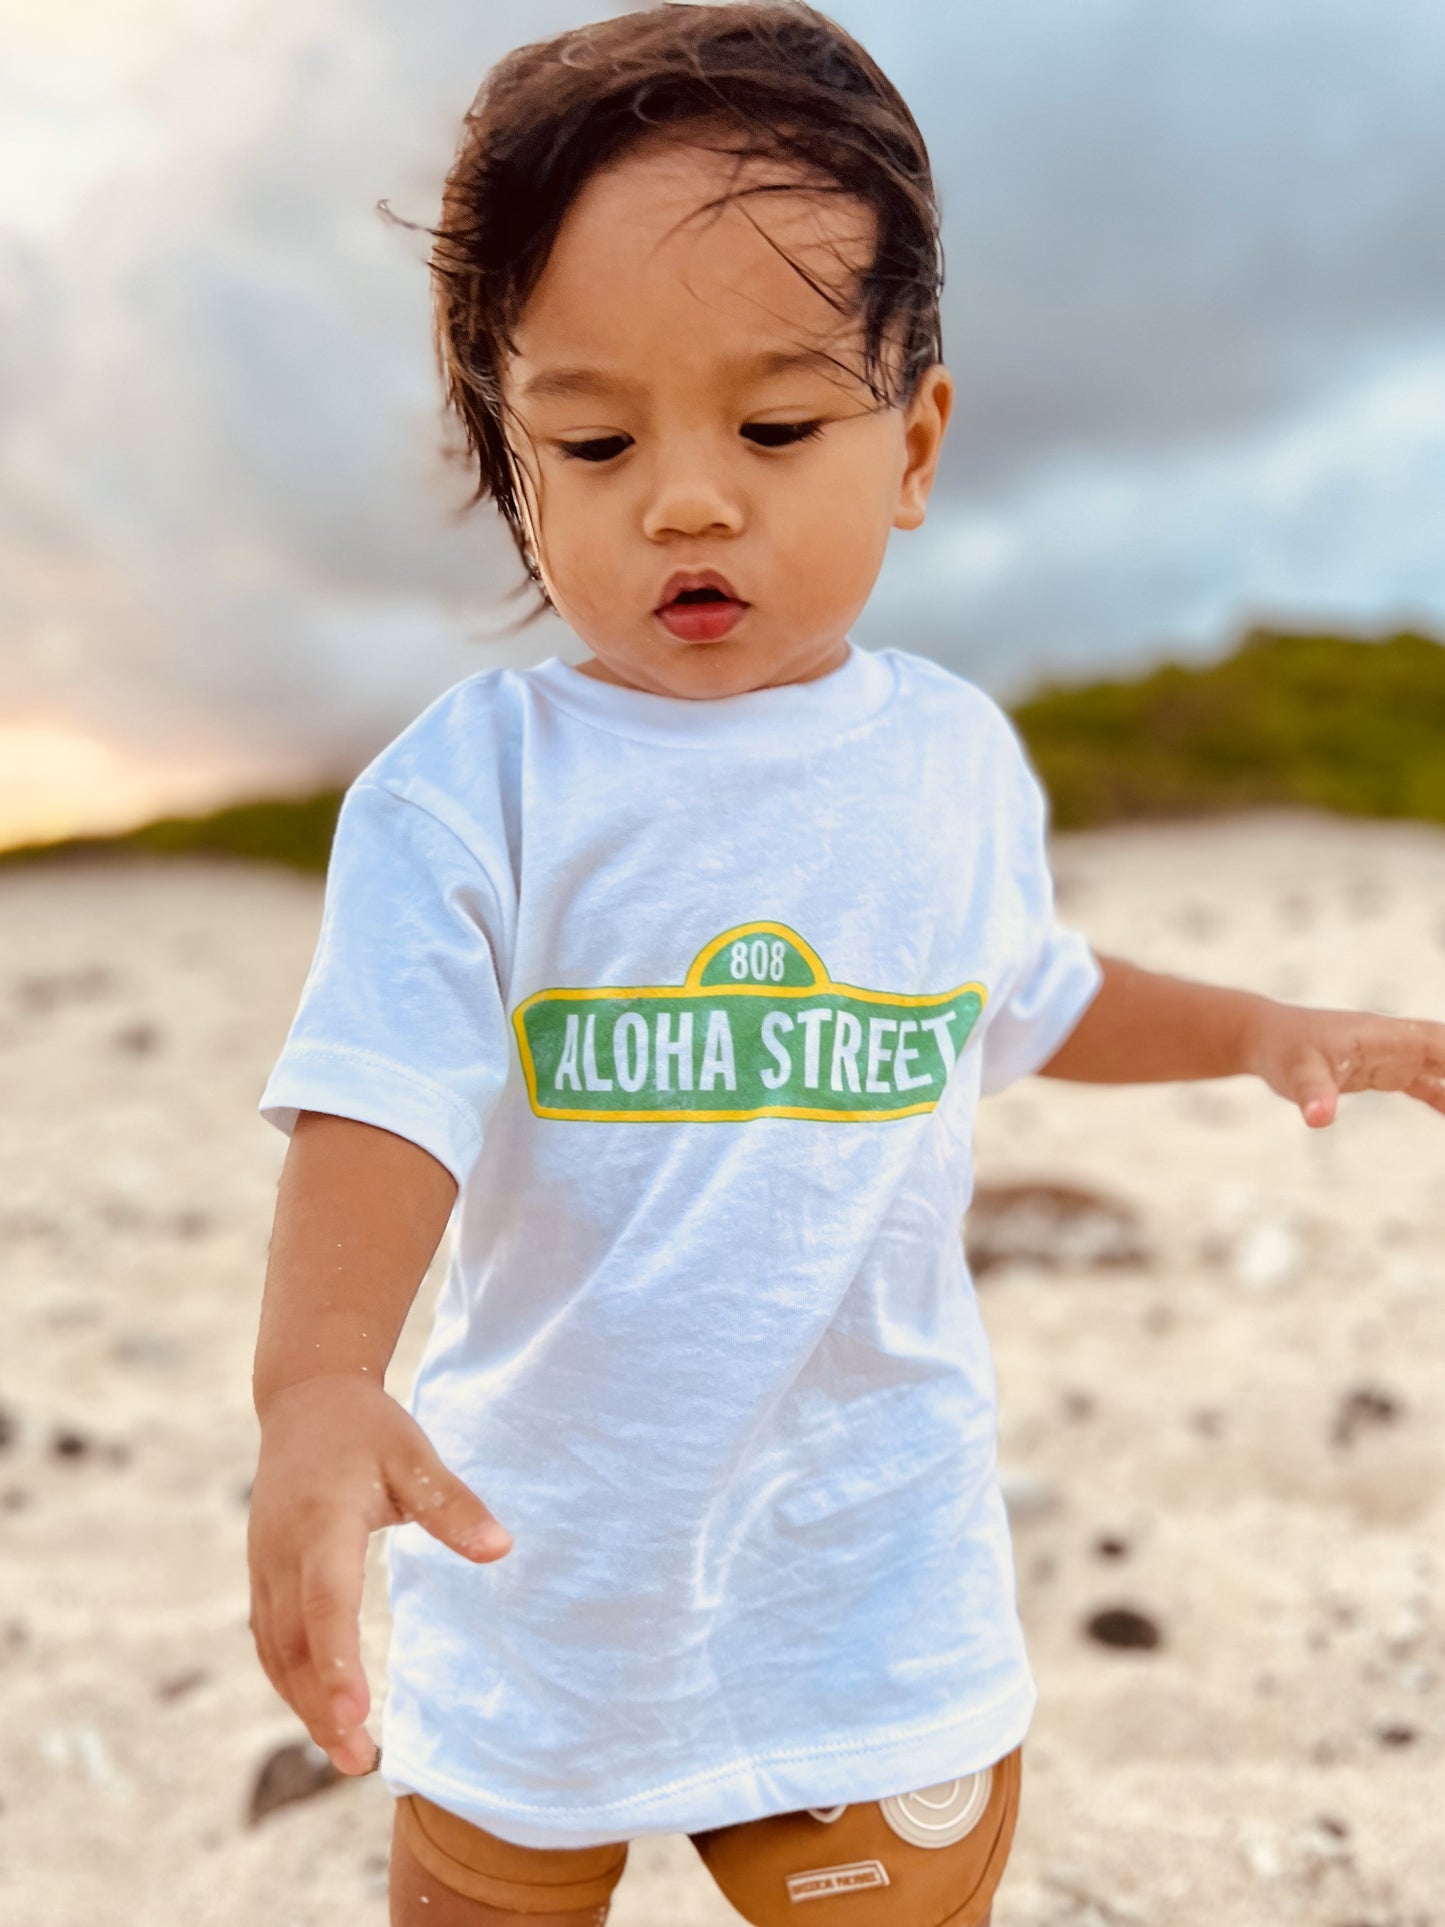 Aloha Street Toddler T-shirt